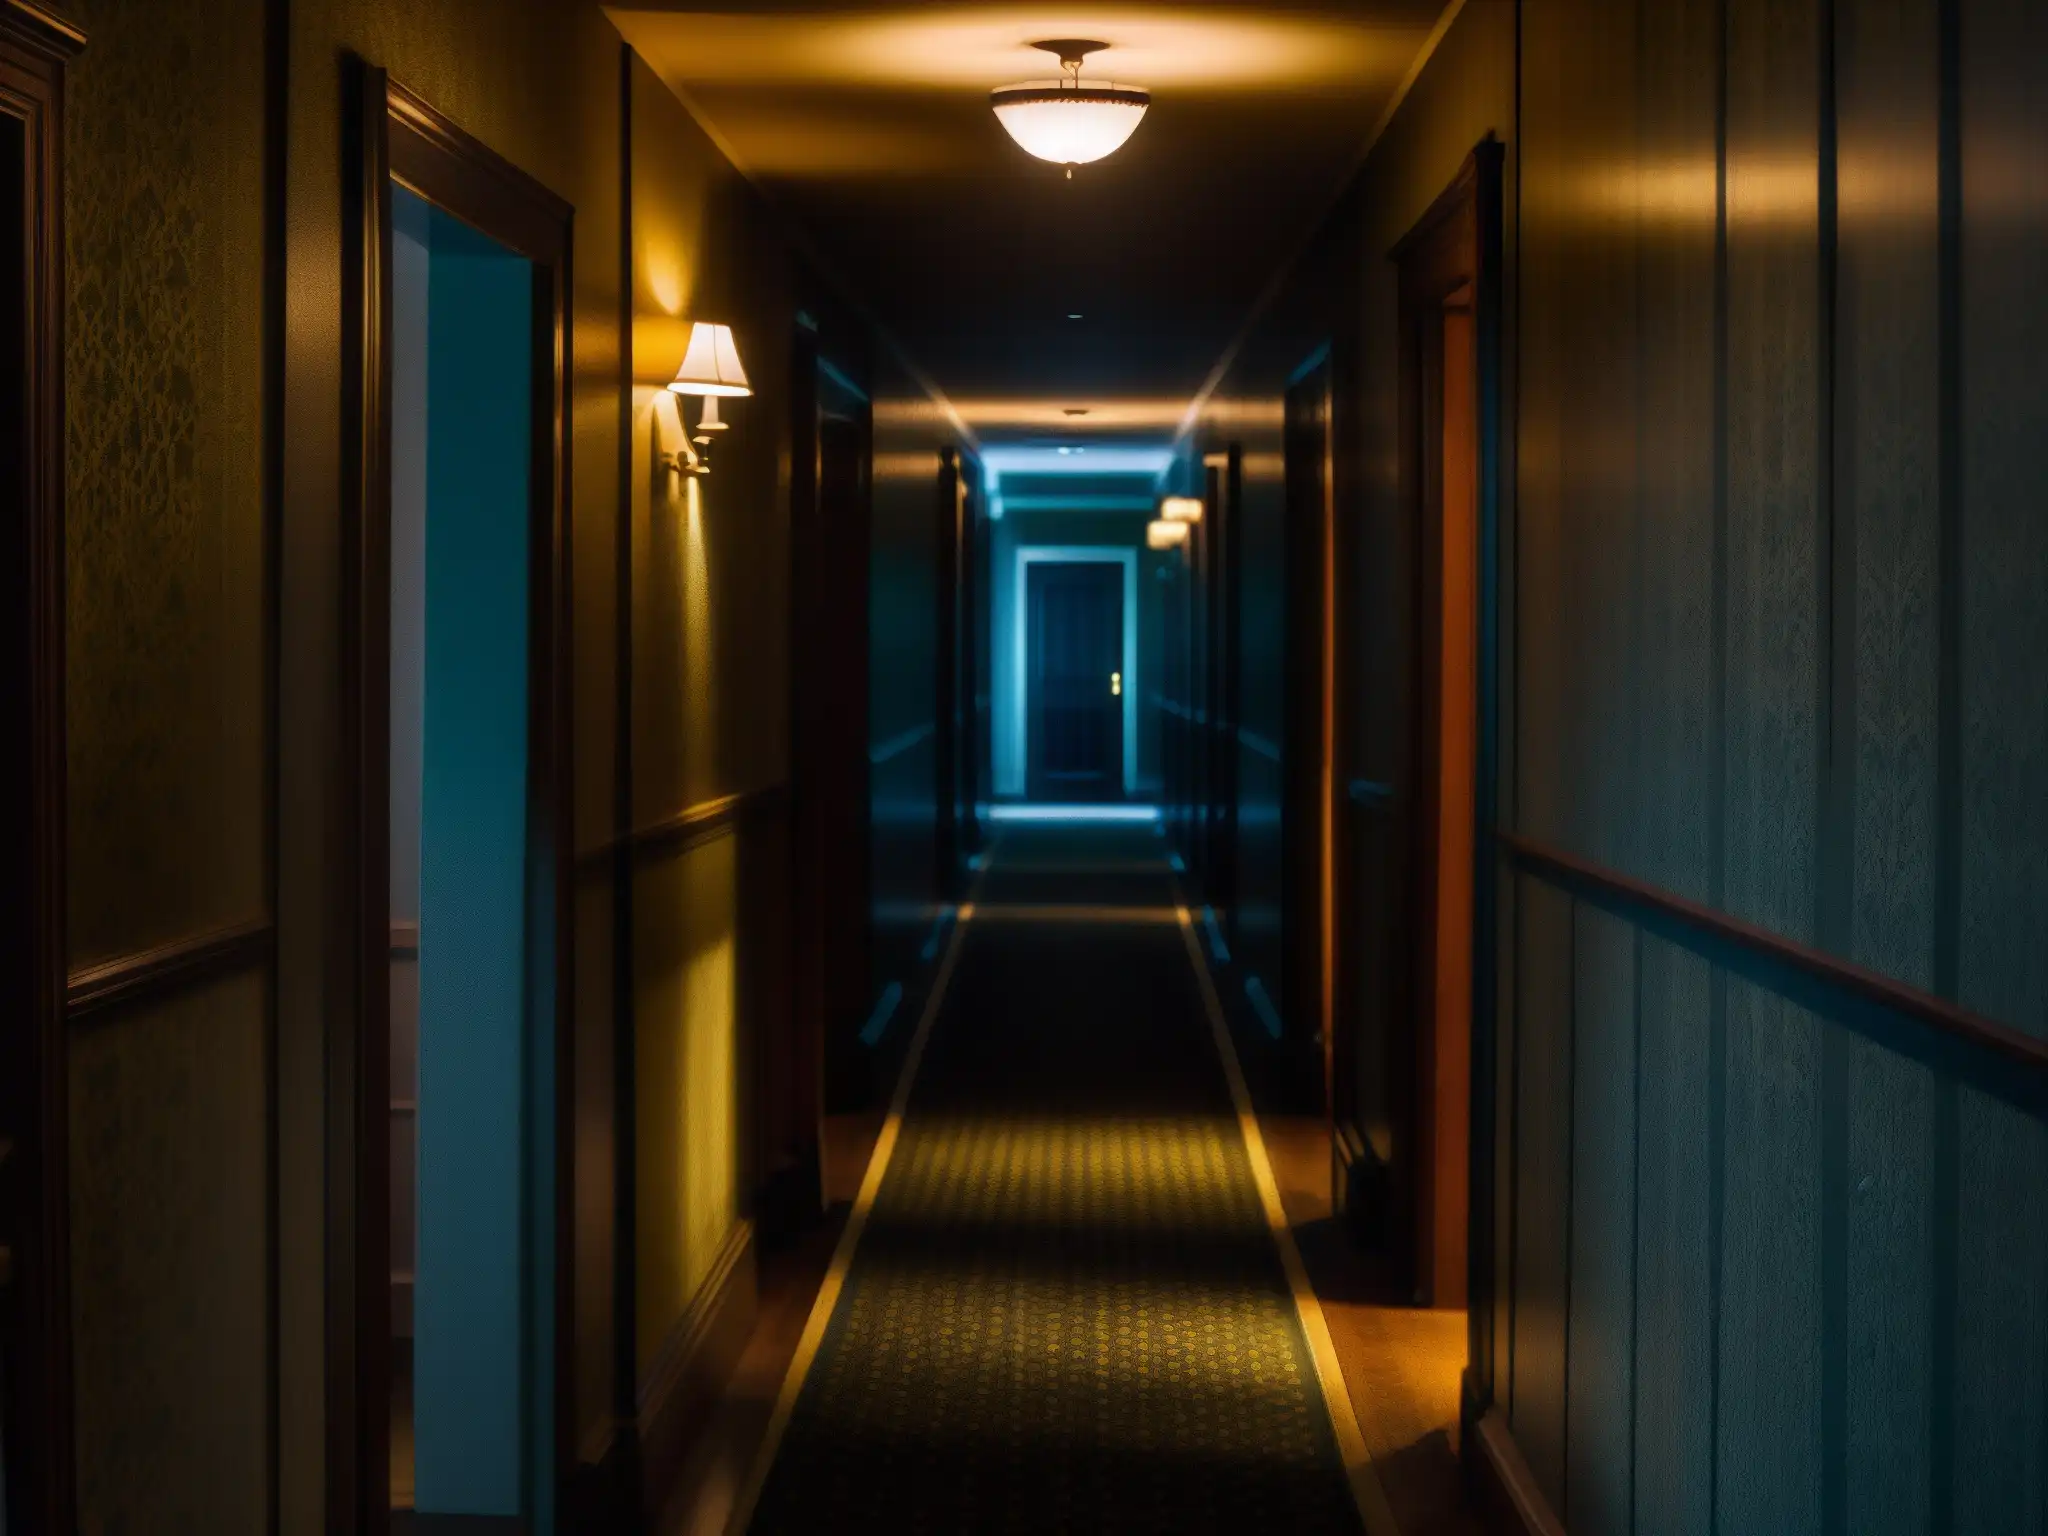 Un pasillo sombrío en el Hotel Savoy, con ambiente misterioso y tenue luz titilante al fondo